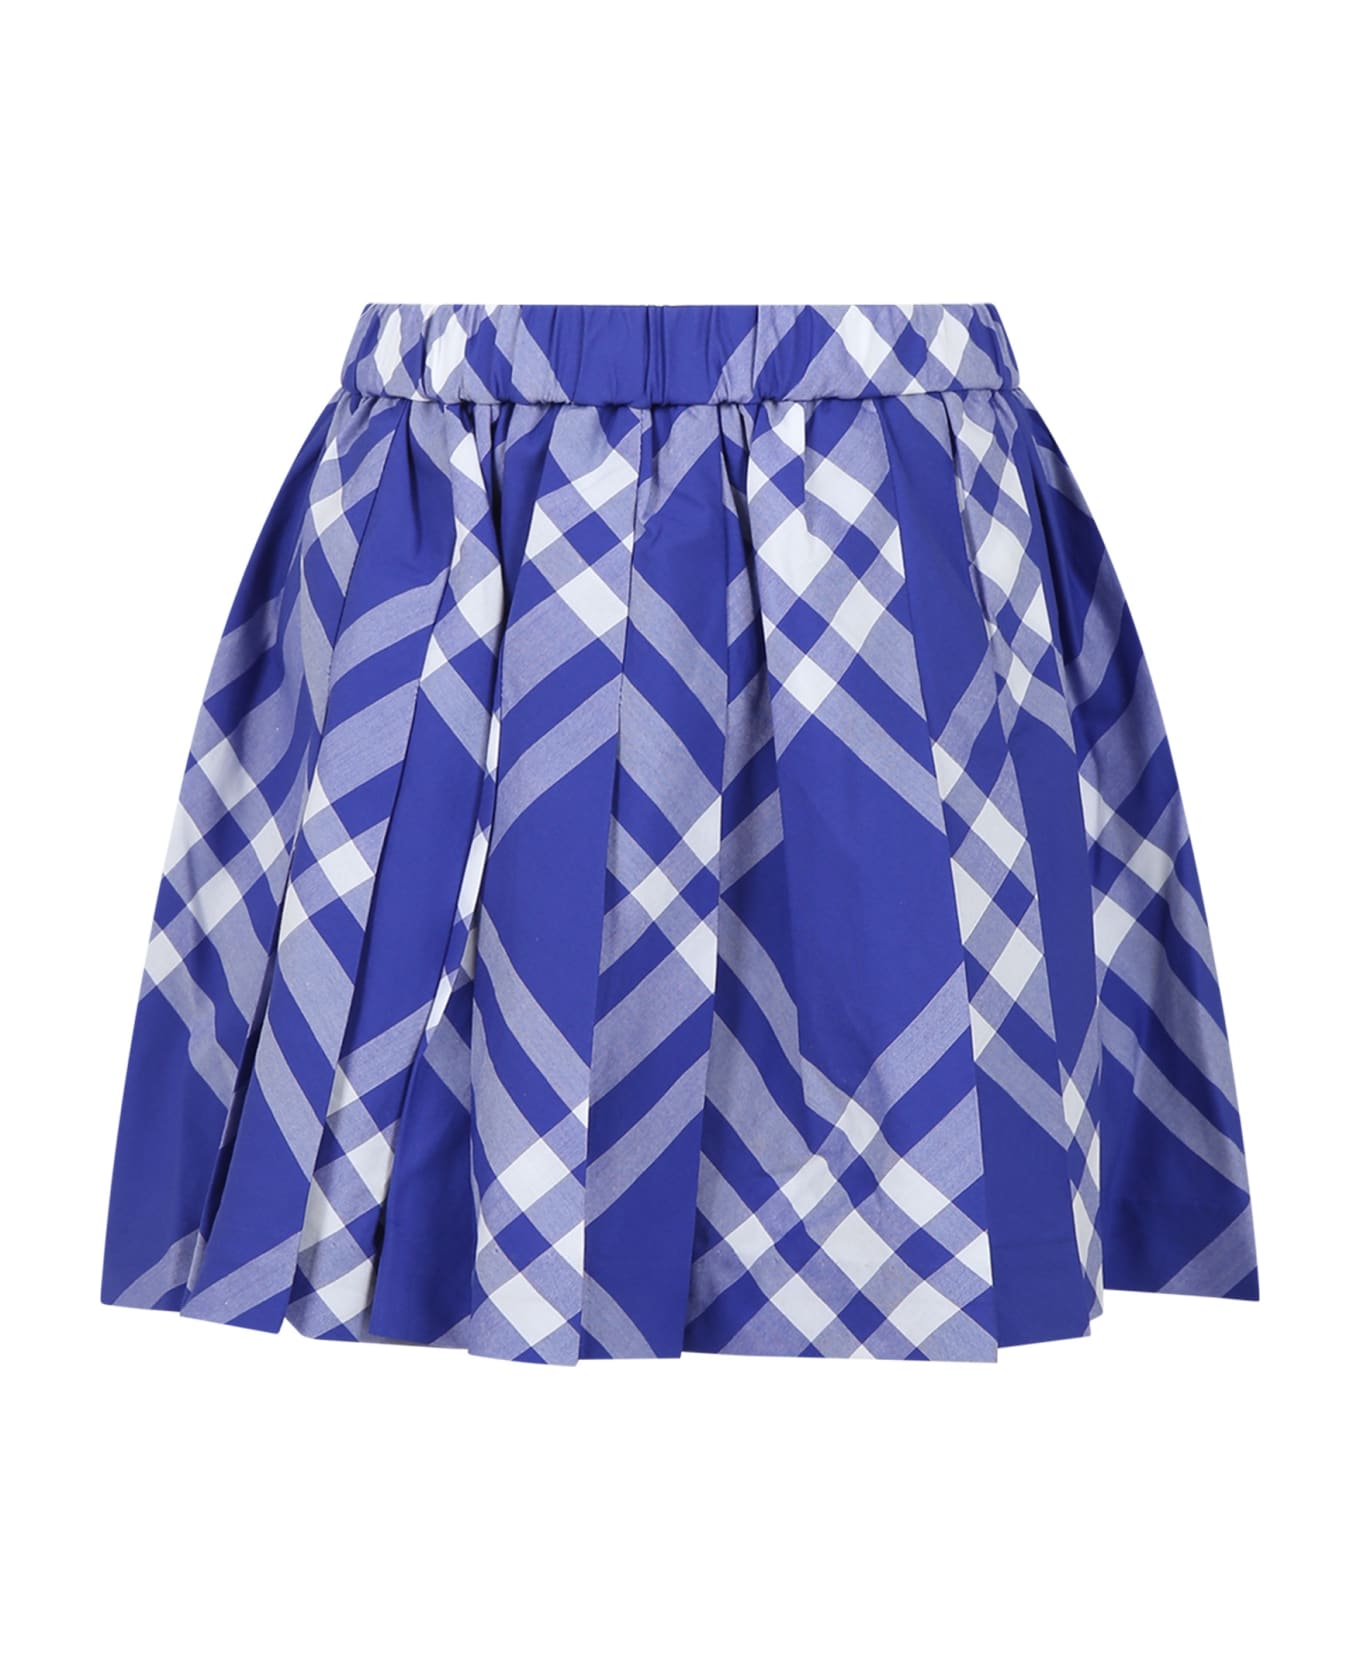 Burberry Blue Skirt For Girl - Blue